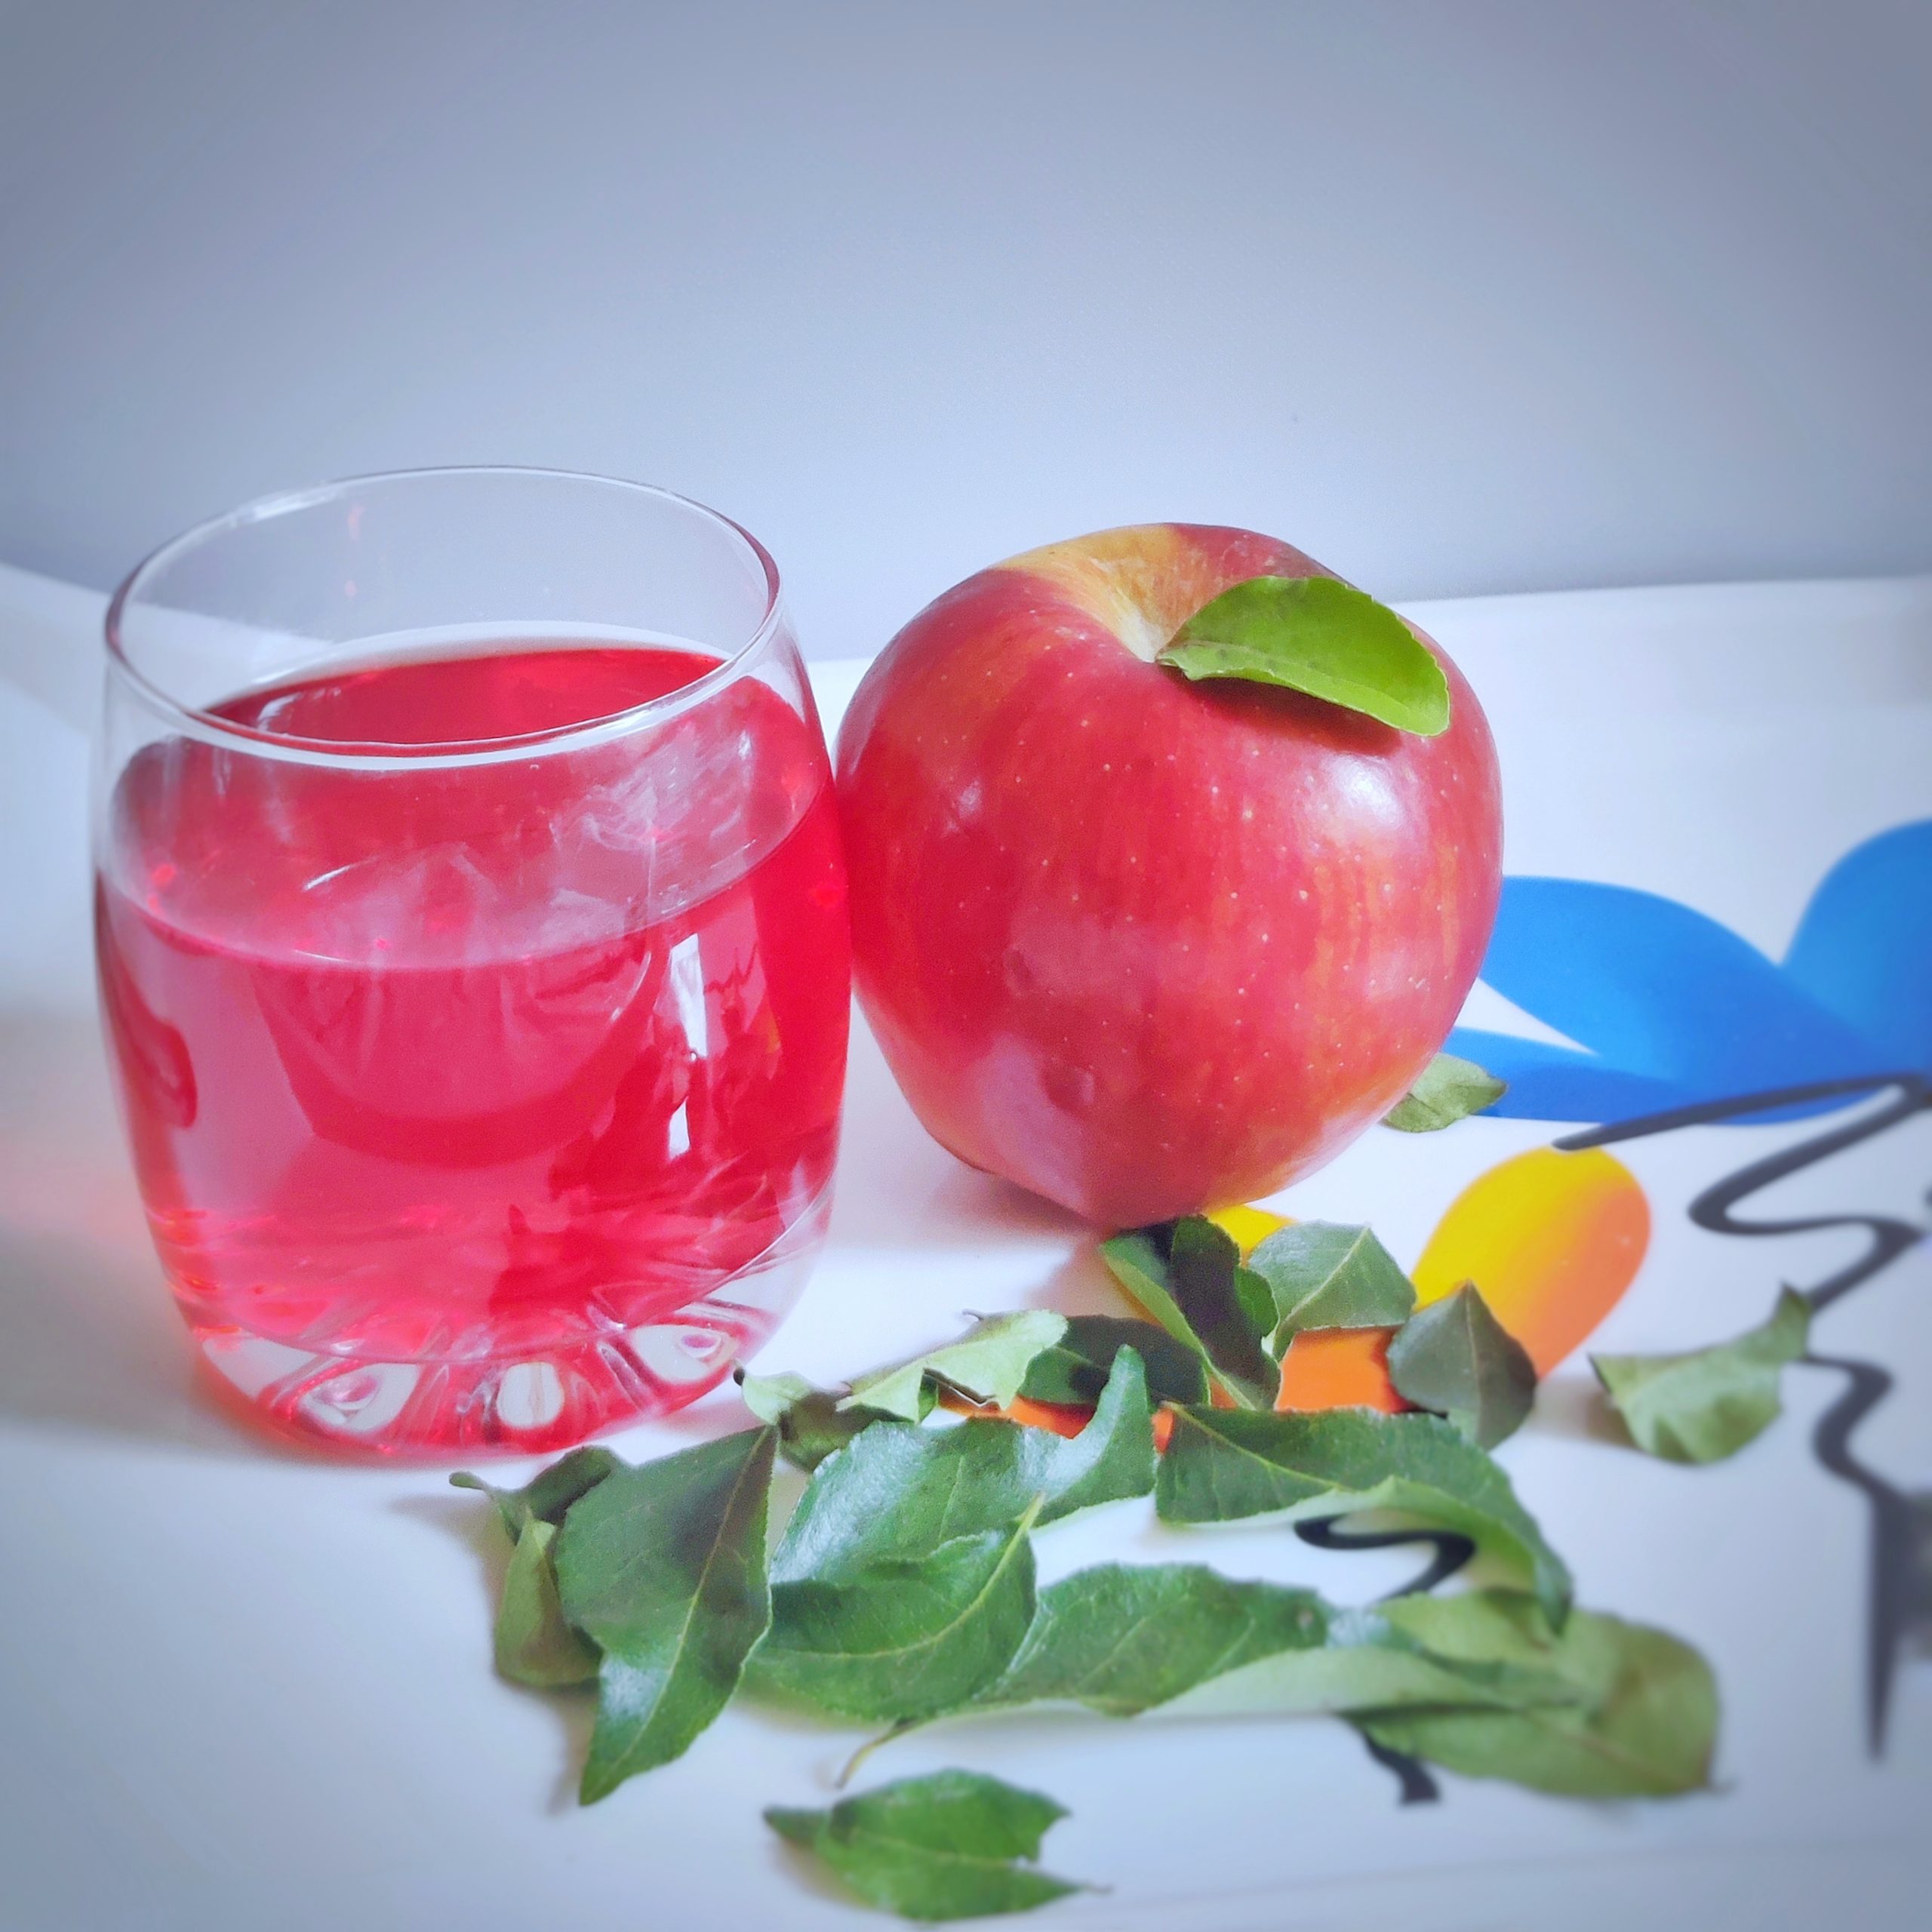 Apple juice and apple